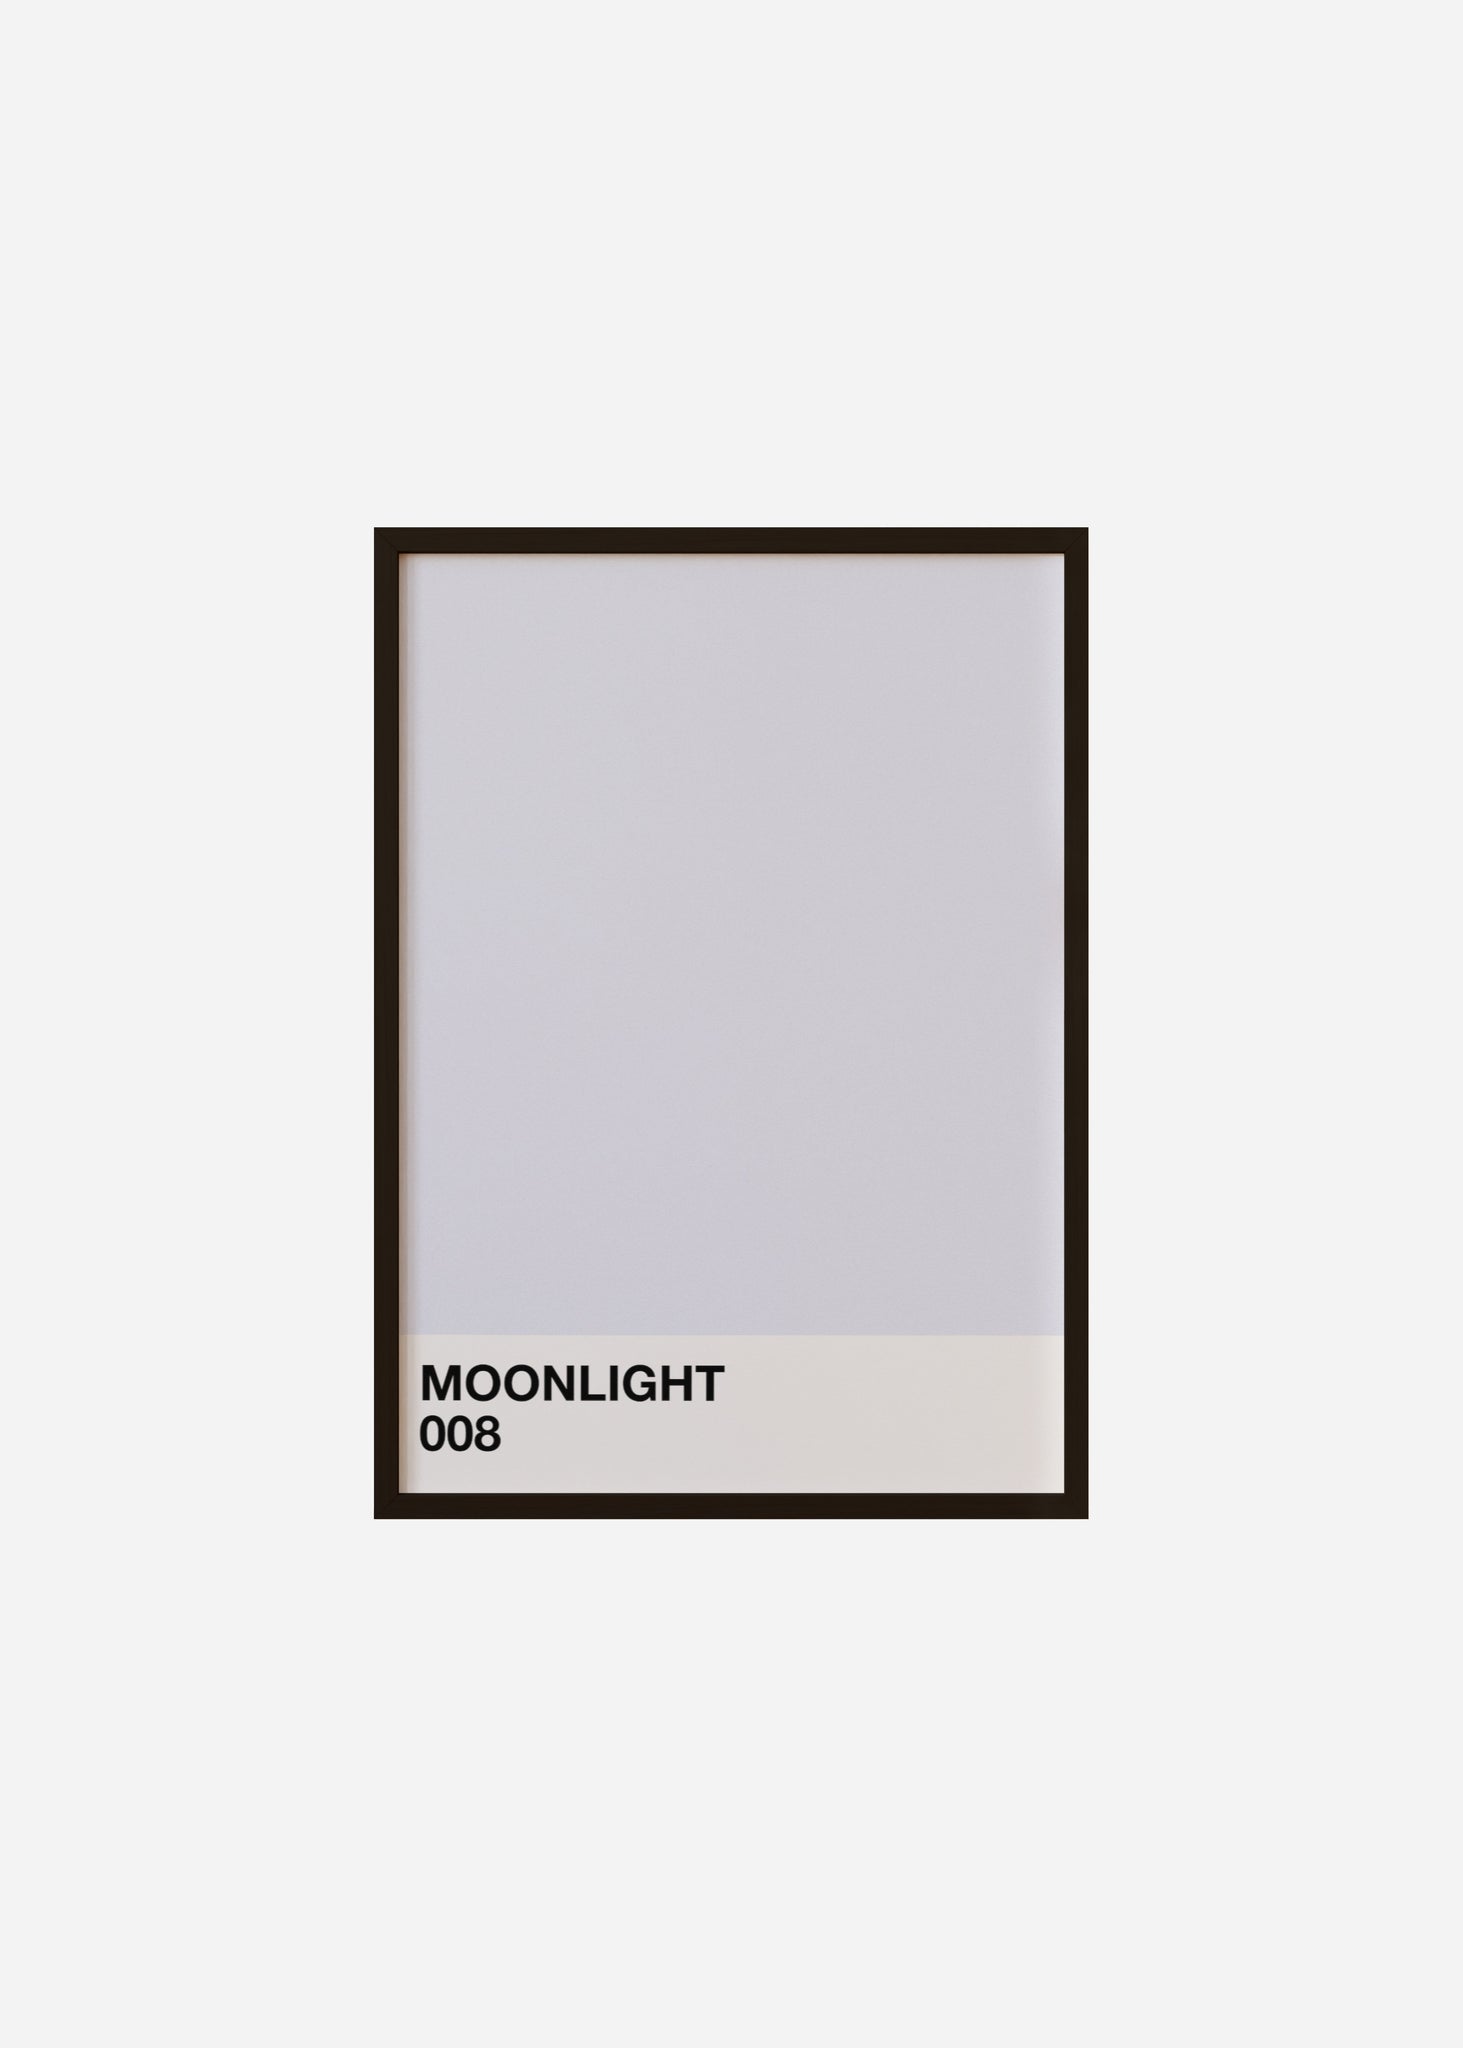 moonlight Framed Print